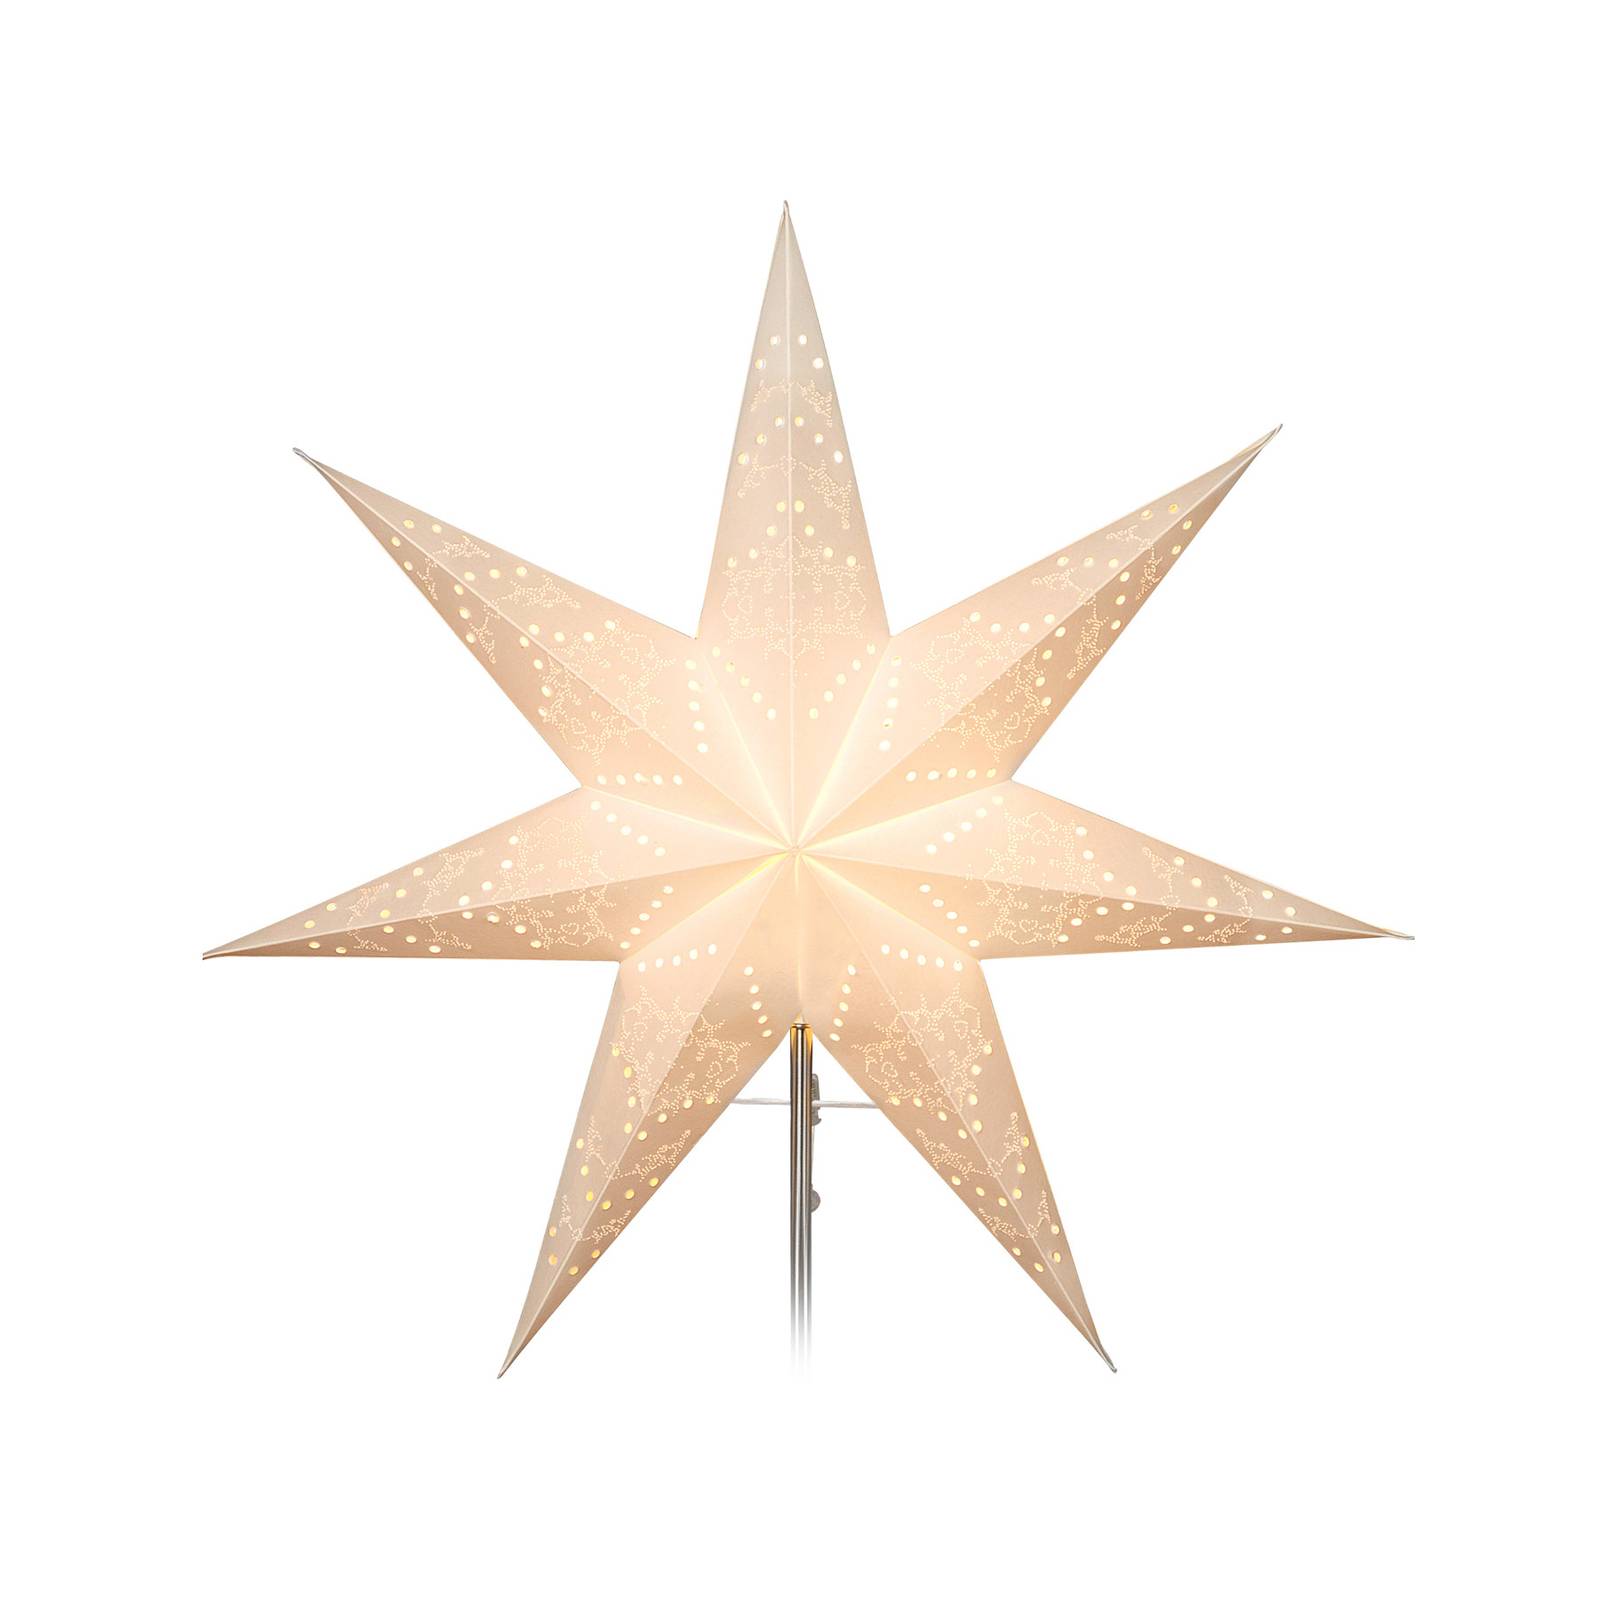 Paperi-varatähti Sensy Star valkoinen Ø54 cm